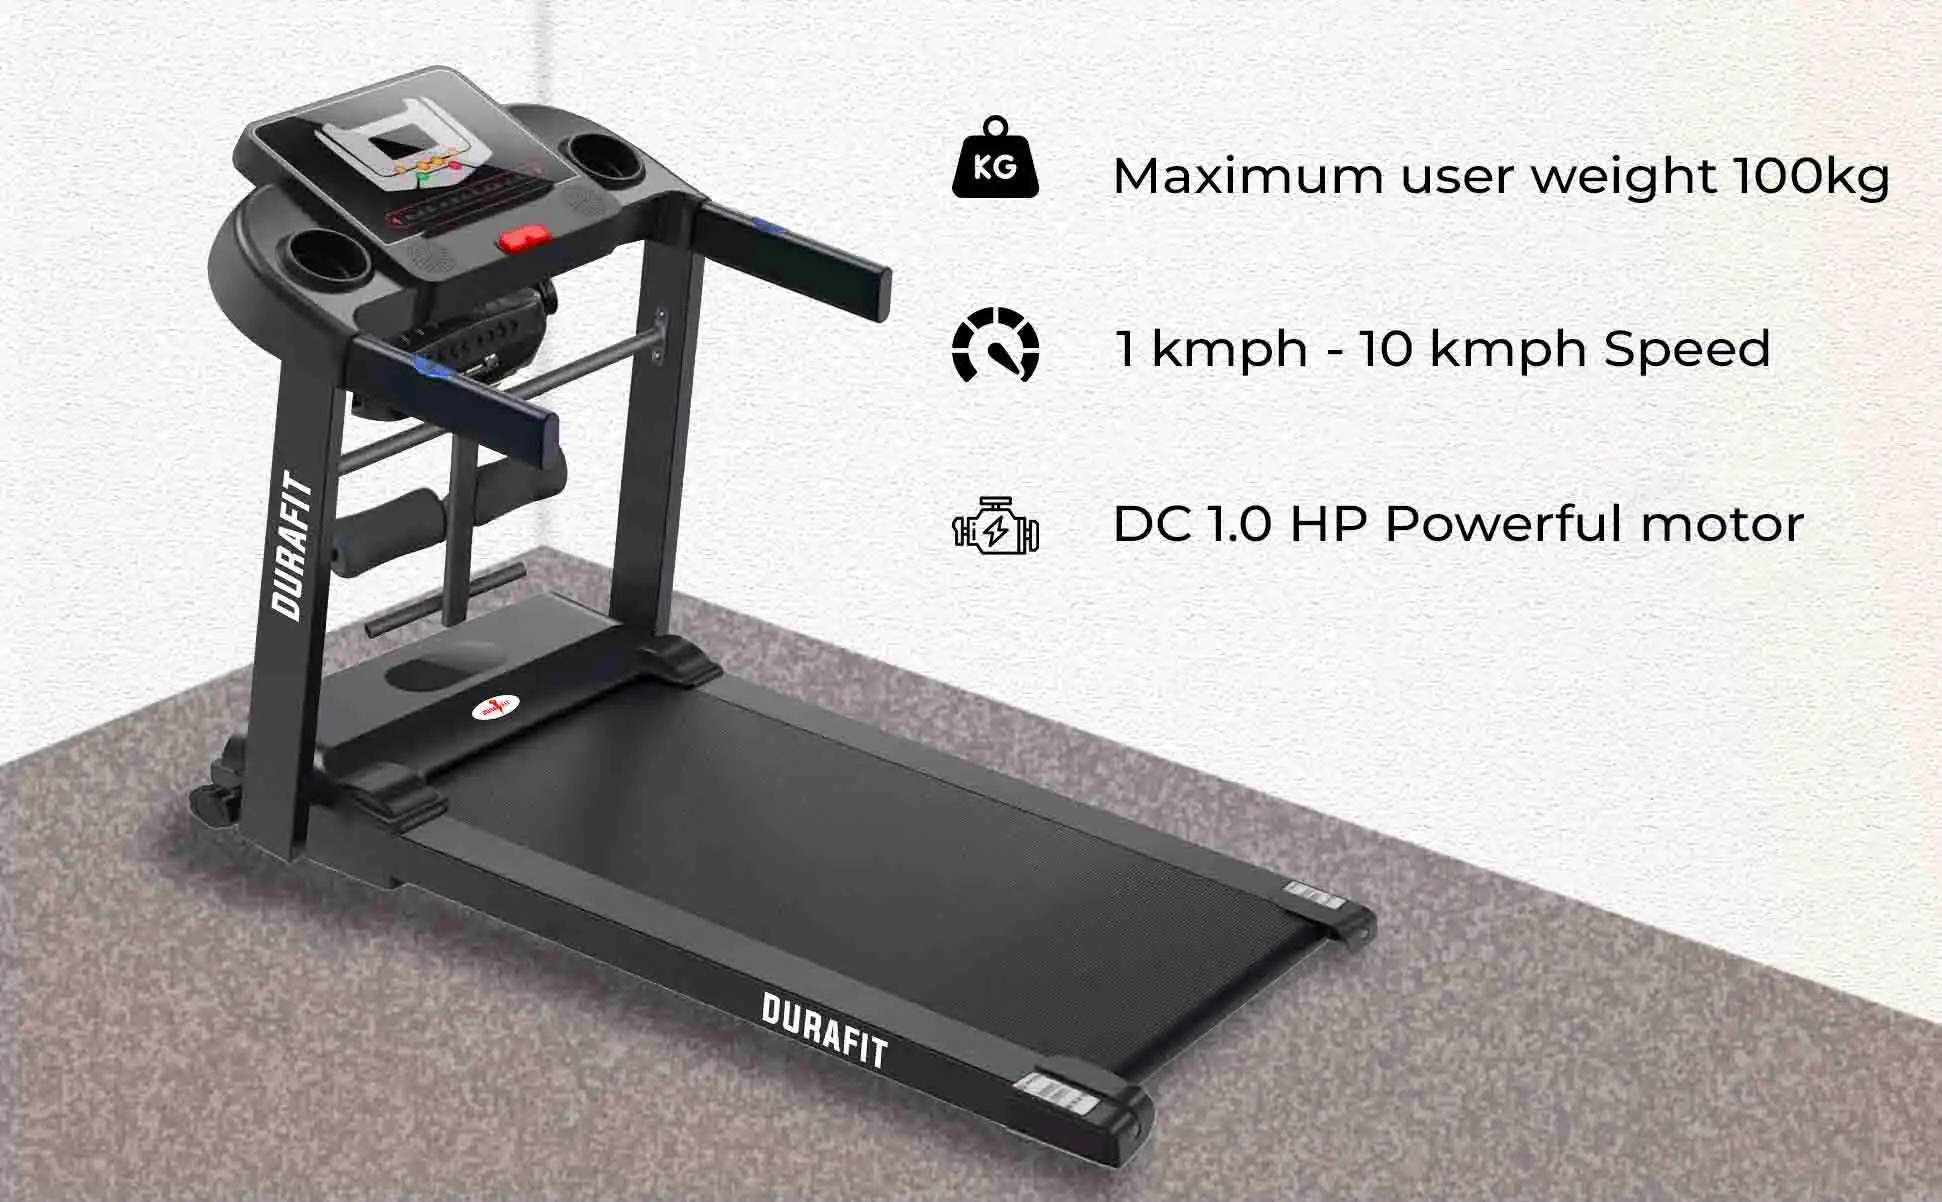 Durafit Spark Multifunction Treadmill